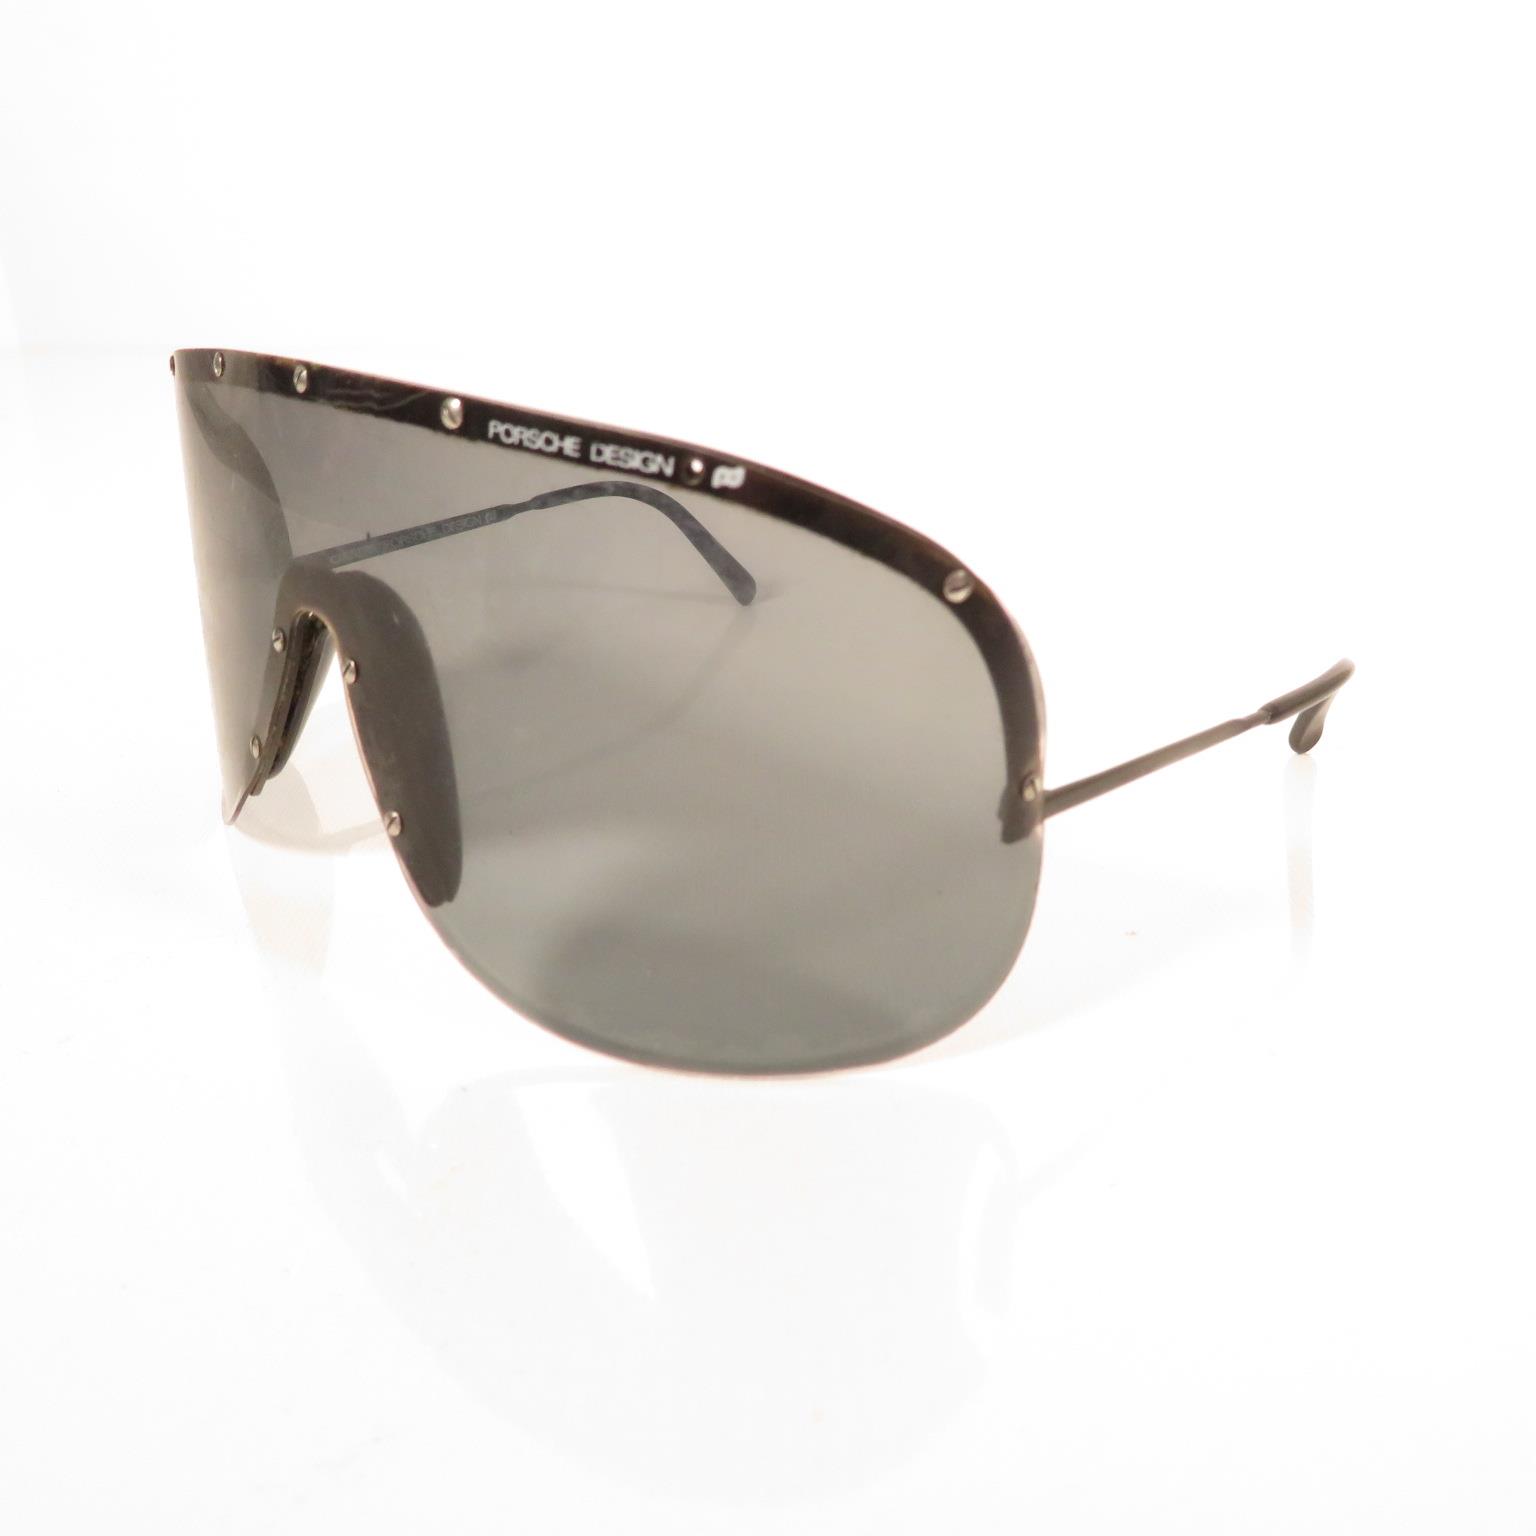 Pair of Porsche Folding Sunglasses, Per Sol folding Sunglasses, Oakley sunglasses and Porsche design - Bild 12 aus 17